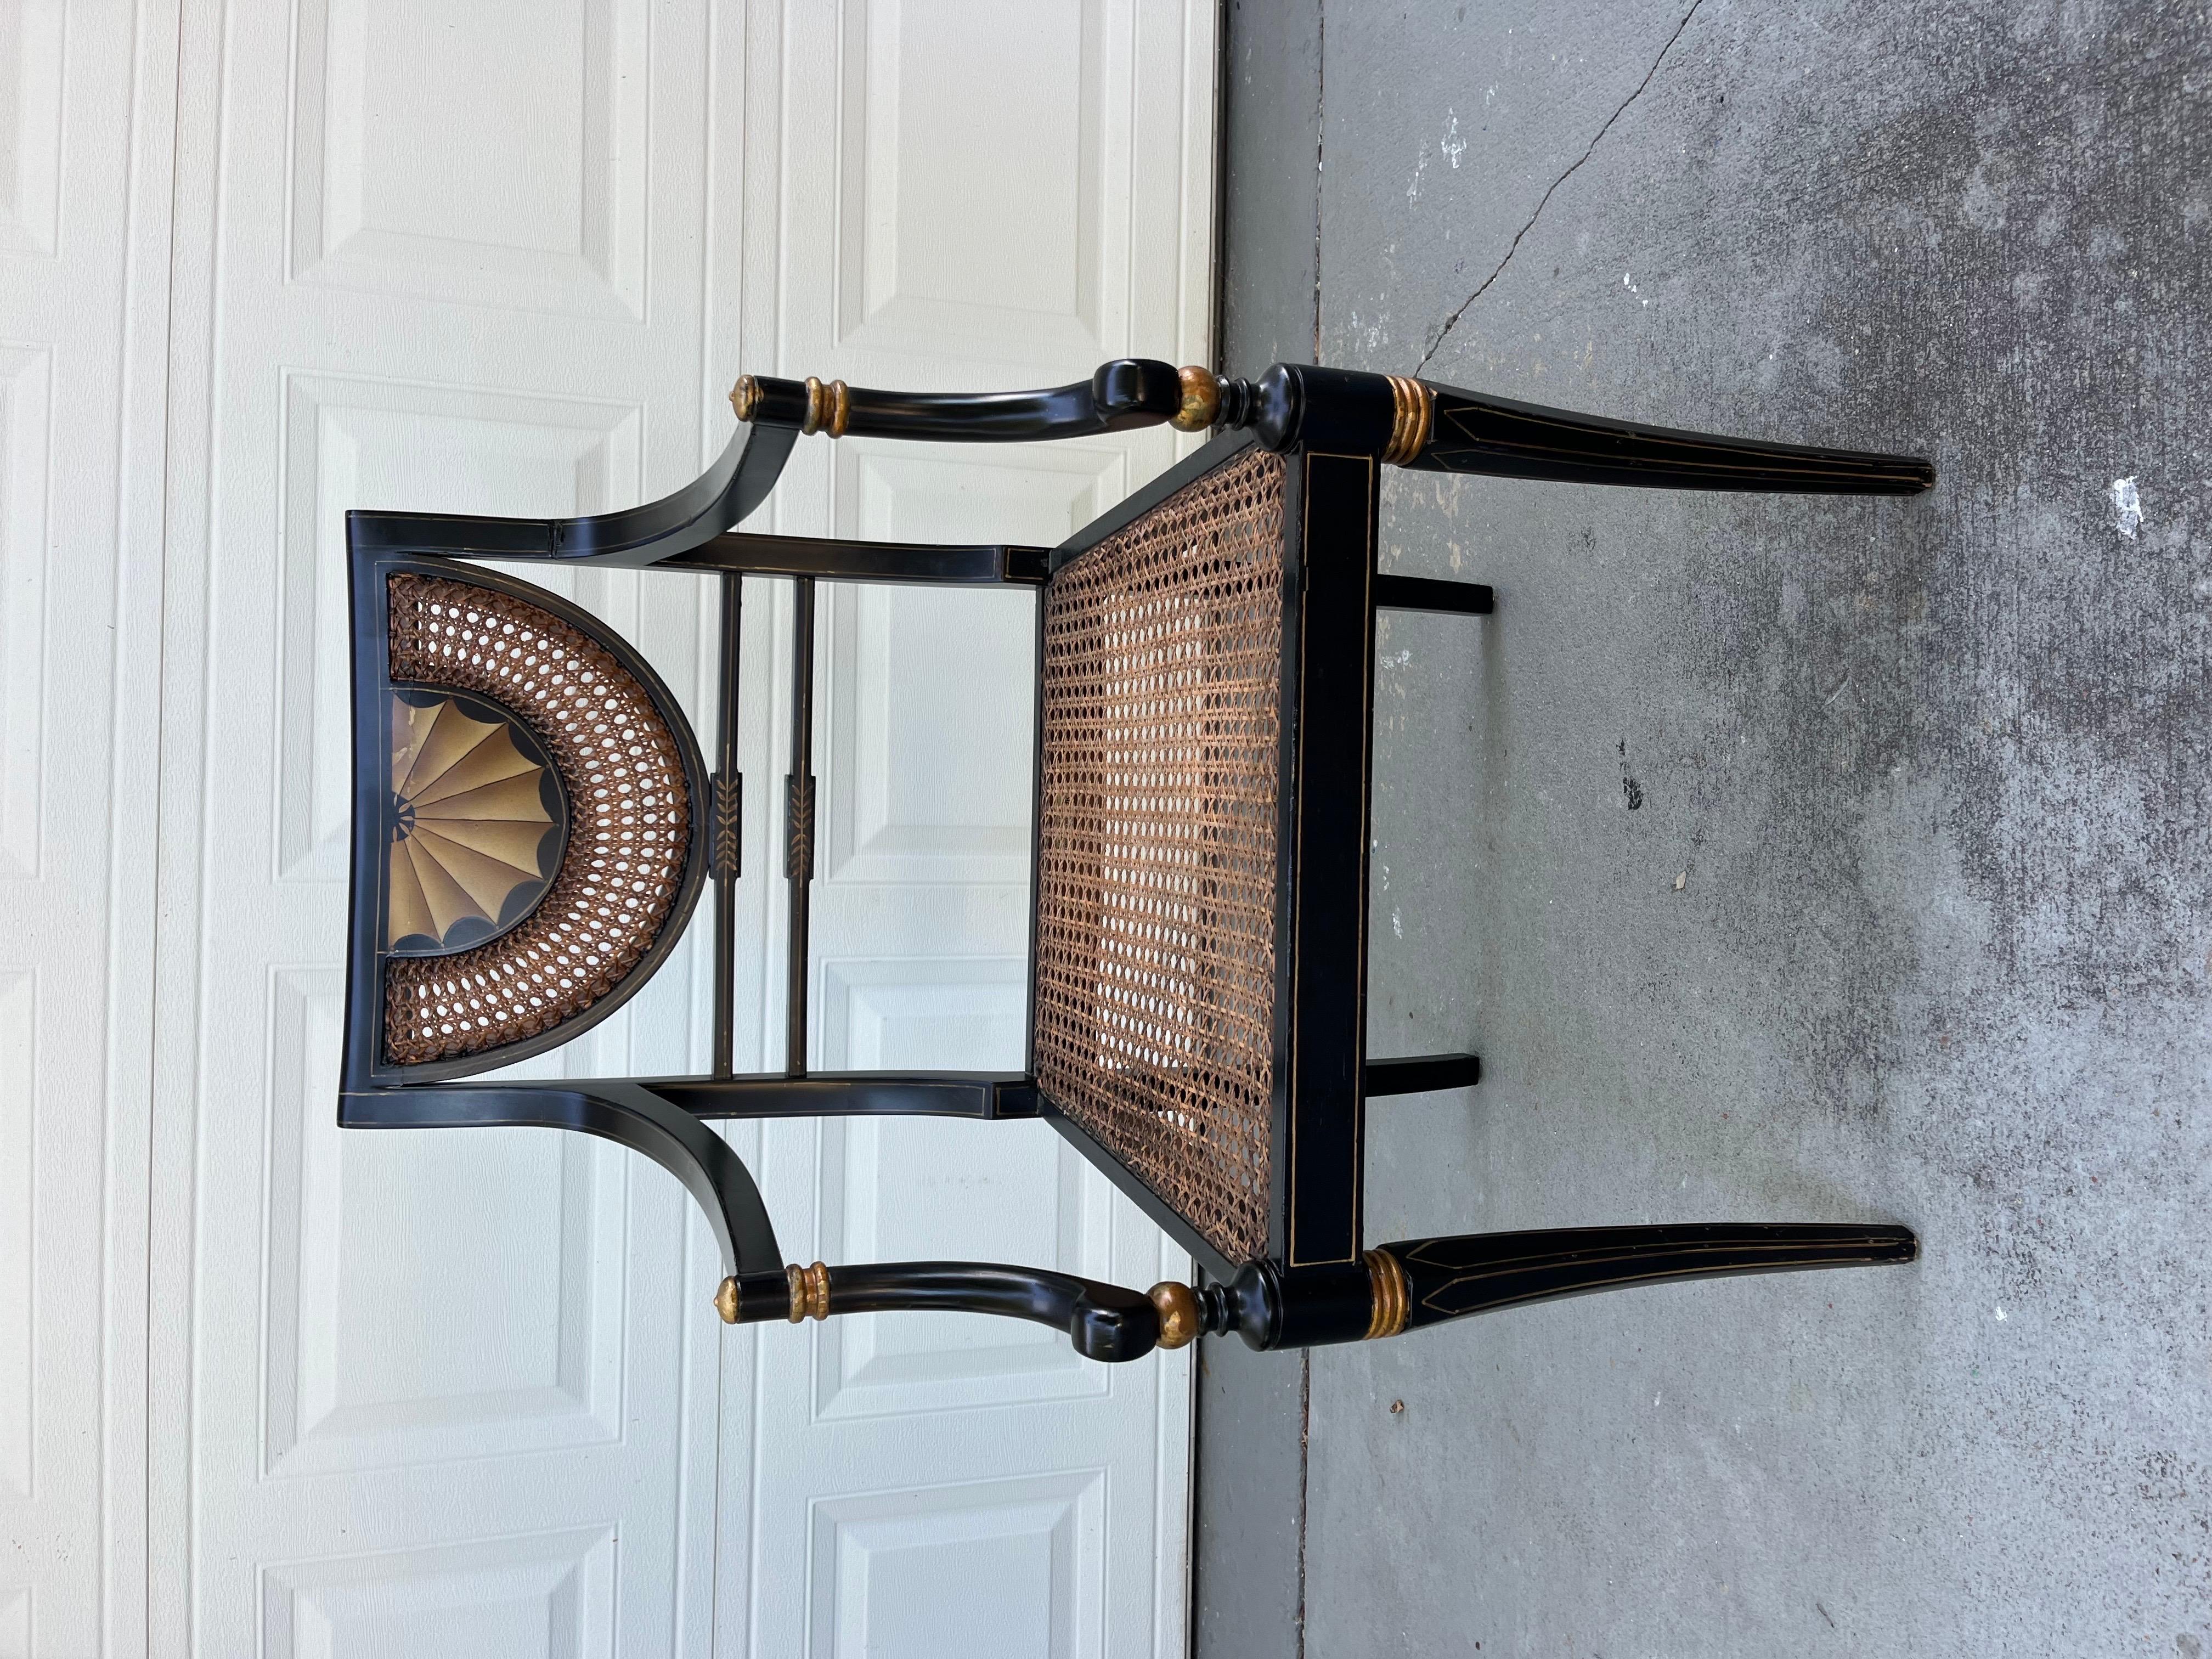 Vintage Regency Style Ebonized Armchair with Cane Seat (Fauteuil ébonisé de style Régence avec assise en rotin)

Fauteuil de style Regency du 20e siècle de l'ébéniste Trouvailles, Watertown Massachusetts. Il est laqué noir avec des accents peints en